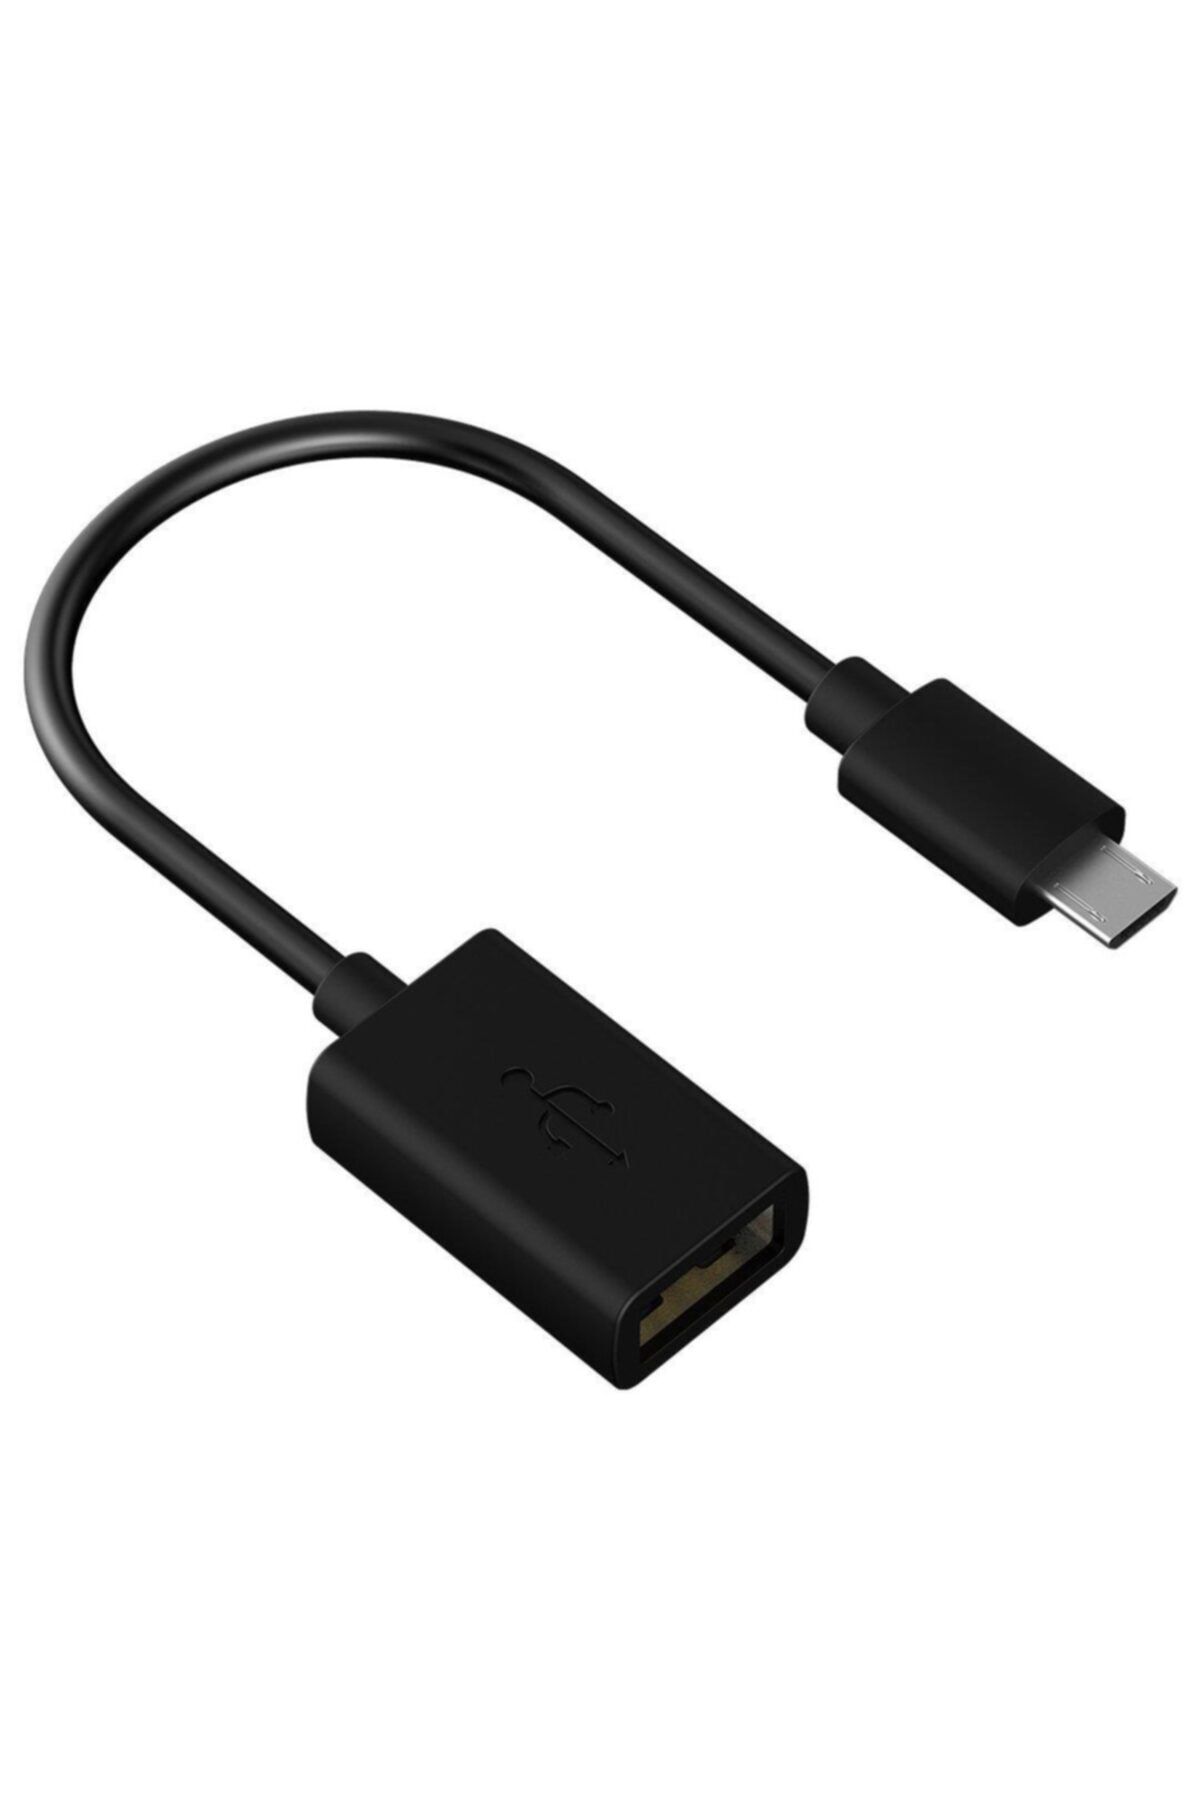 Что такое otg устройство. OTG Micro USB. OTG картридер Micro USB. USB OTG самсунг. Samsung USB OTG Cable.